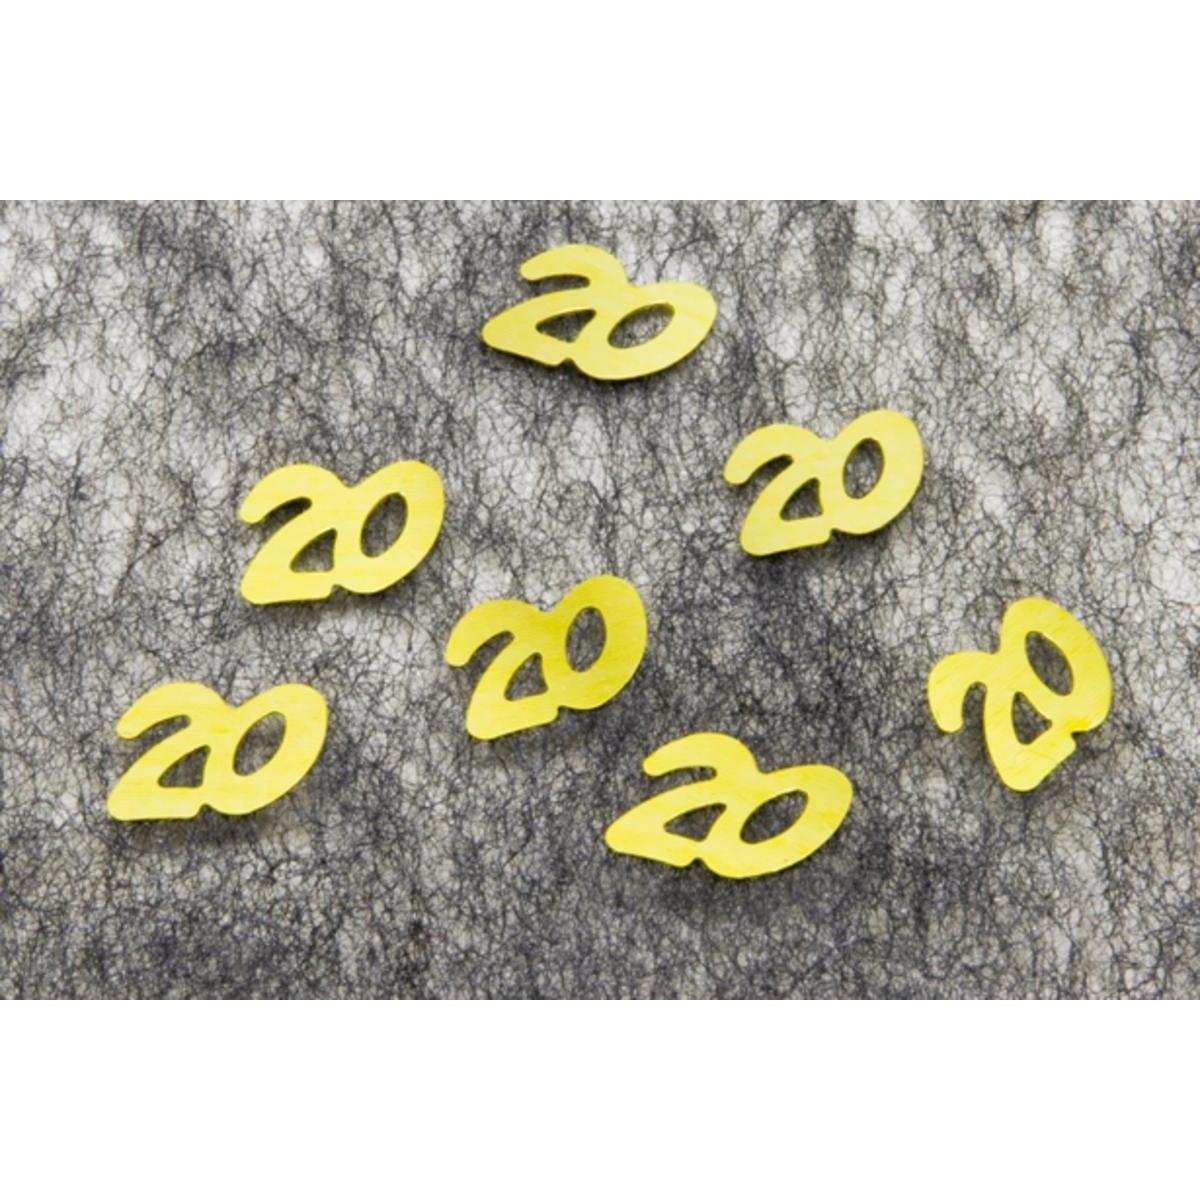 Confetti de table ' 20 ' (10g) - 1 x 1 cm - Or